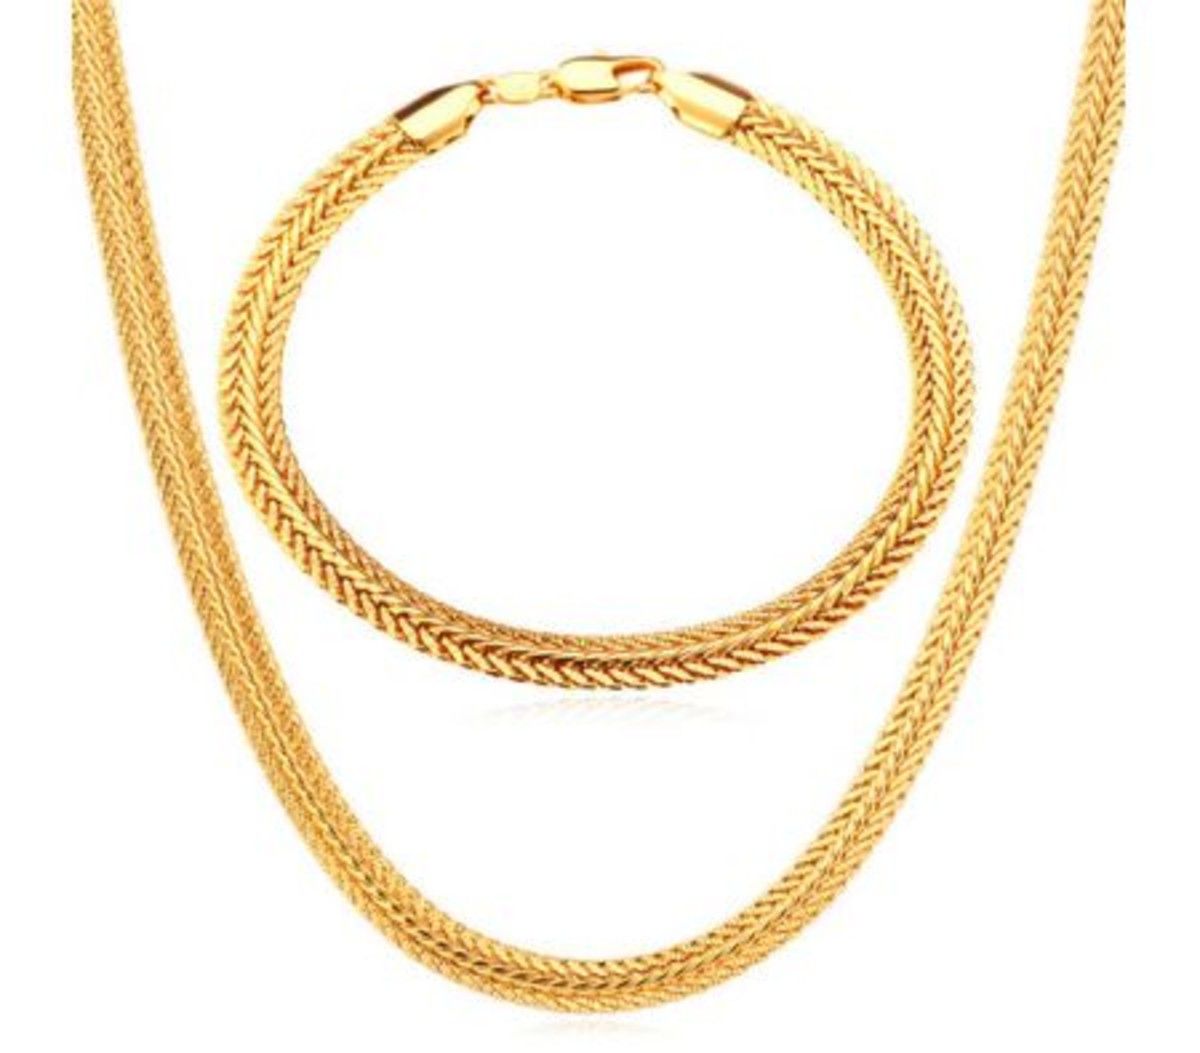 U7 Wheat Chain Necklace Bracelet 18K Real Gold Plated Necklace Bracelet Set Gold